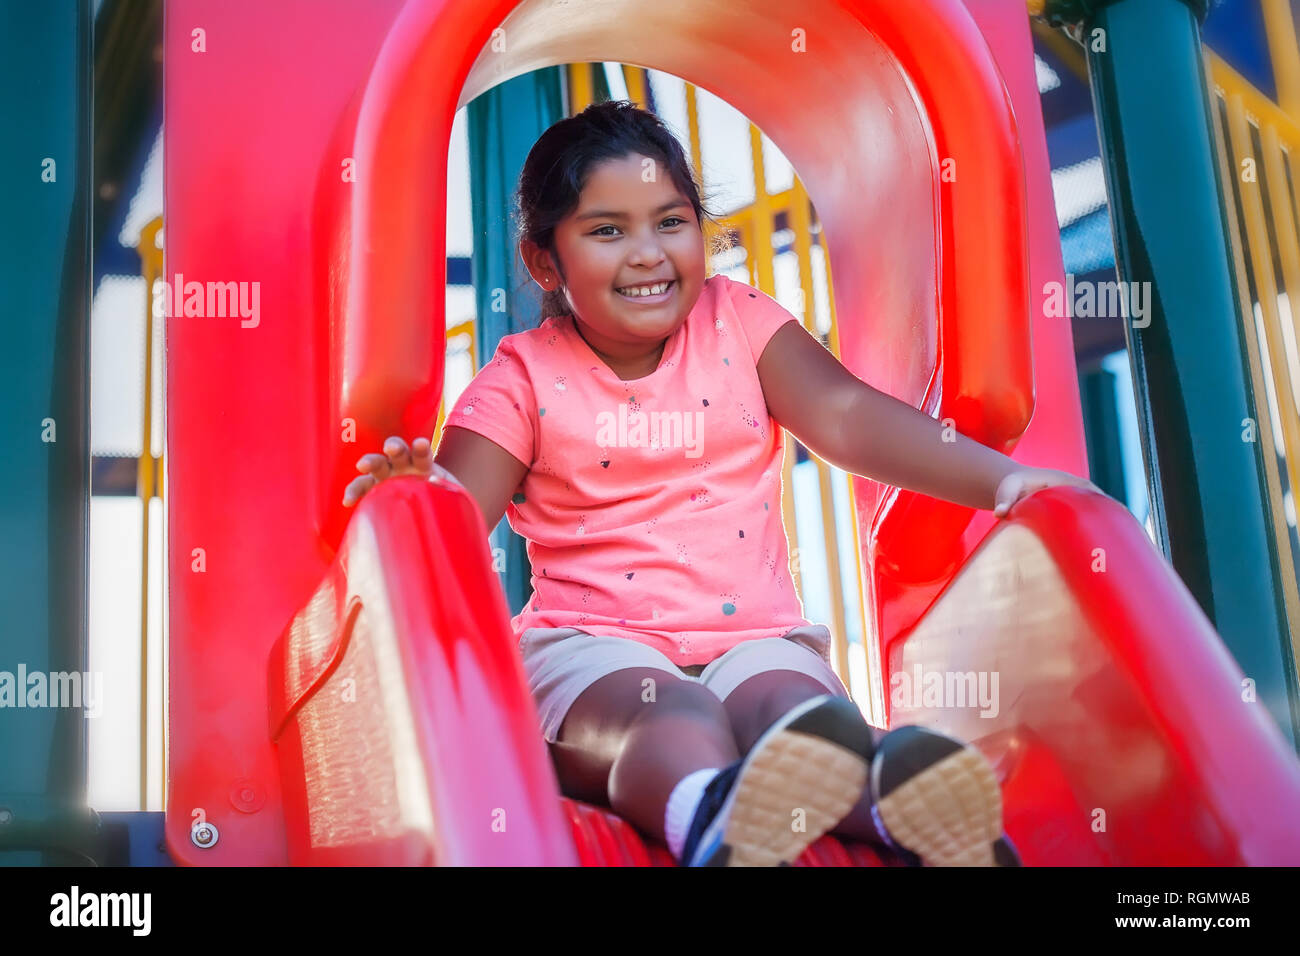 Eine hübsche junge hispanische Mädchen mit einem netten Lächeln sieht entspannt, wie Sie bereitet eine Rutschbahn nach unten zu schieben. Stockfoto